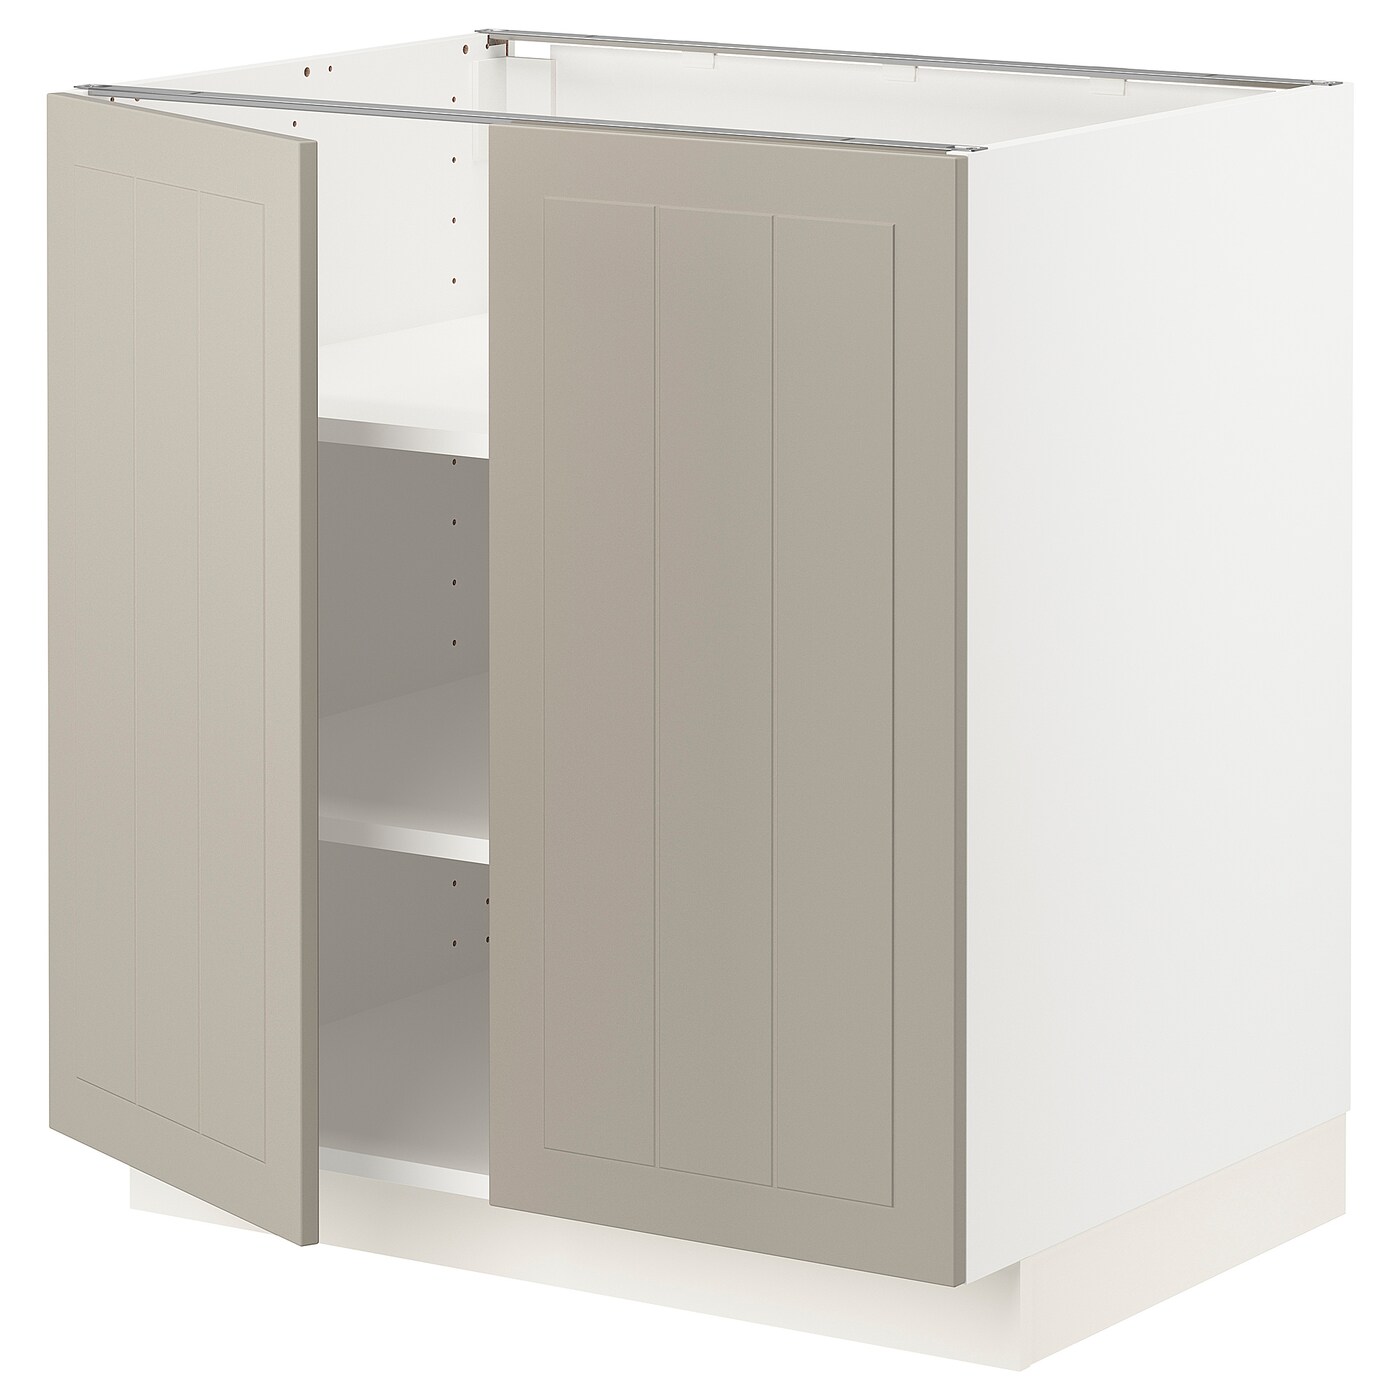 Напольный шкаф - IKEA METOD, 88x62x80см, белый/темно-бежевый, МЕТОД ИКЕА